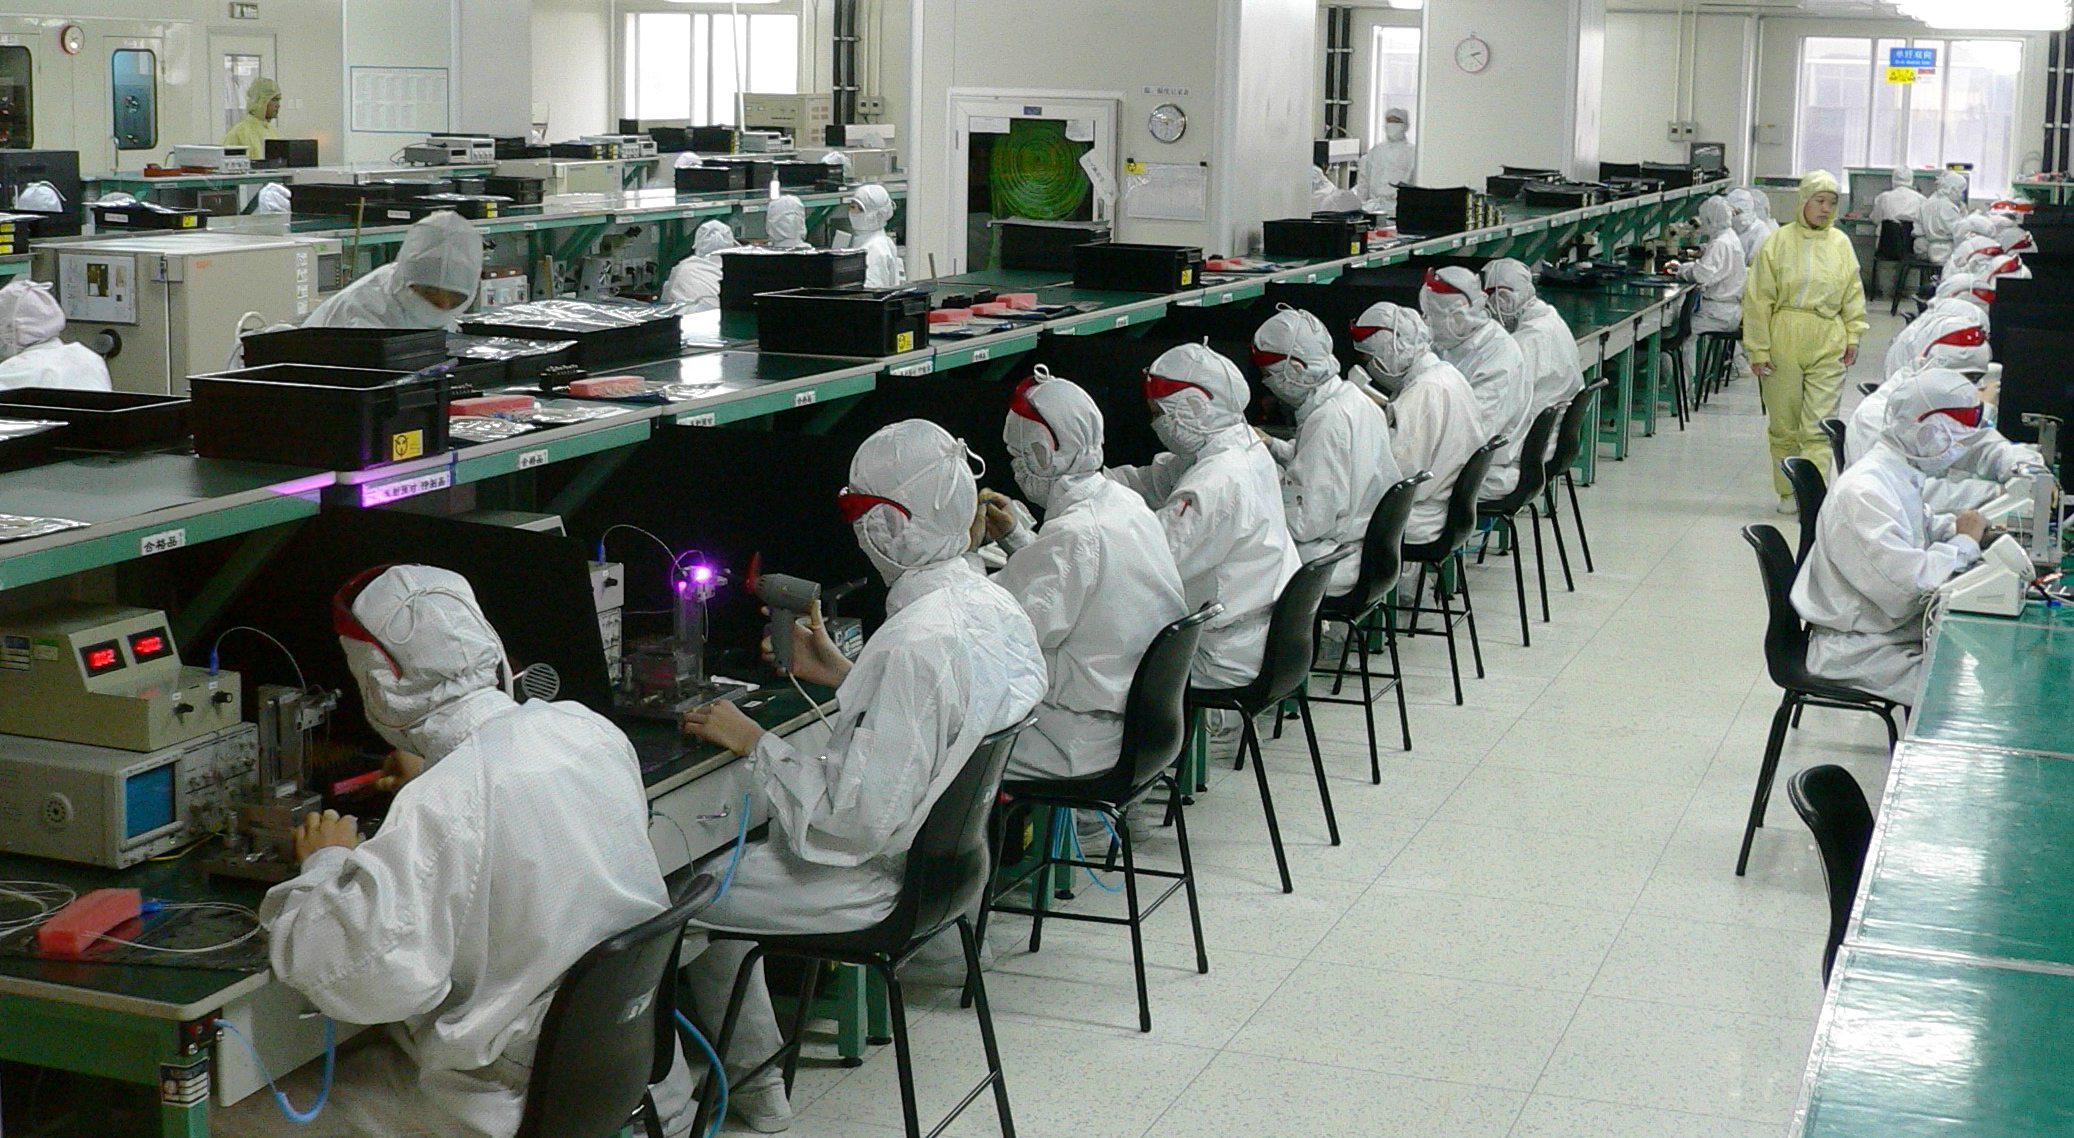 Electronics factory in Shenzhen